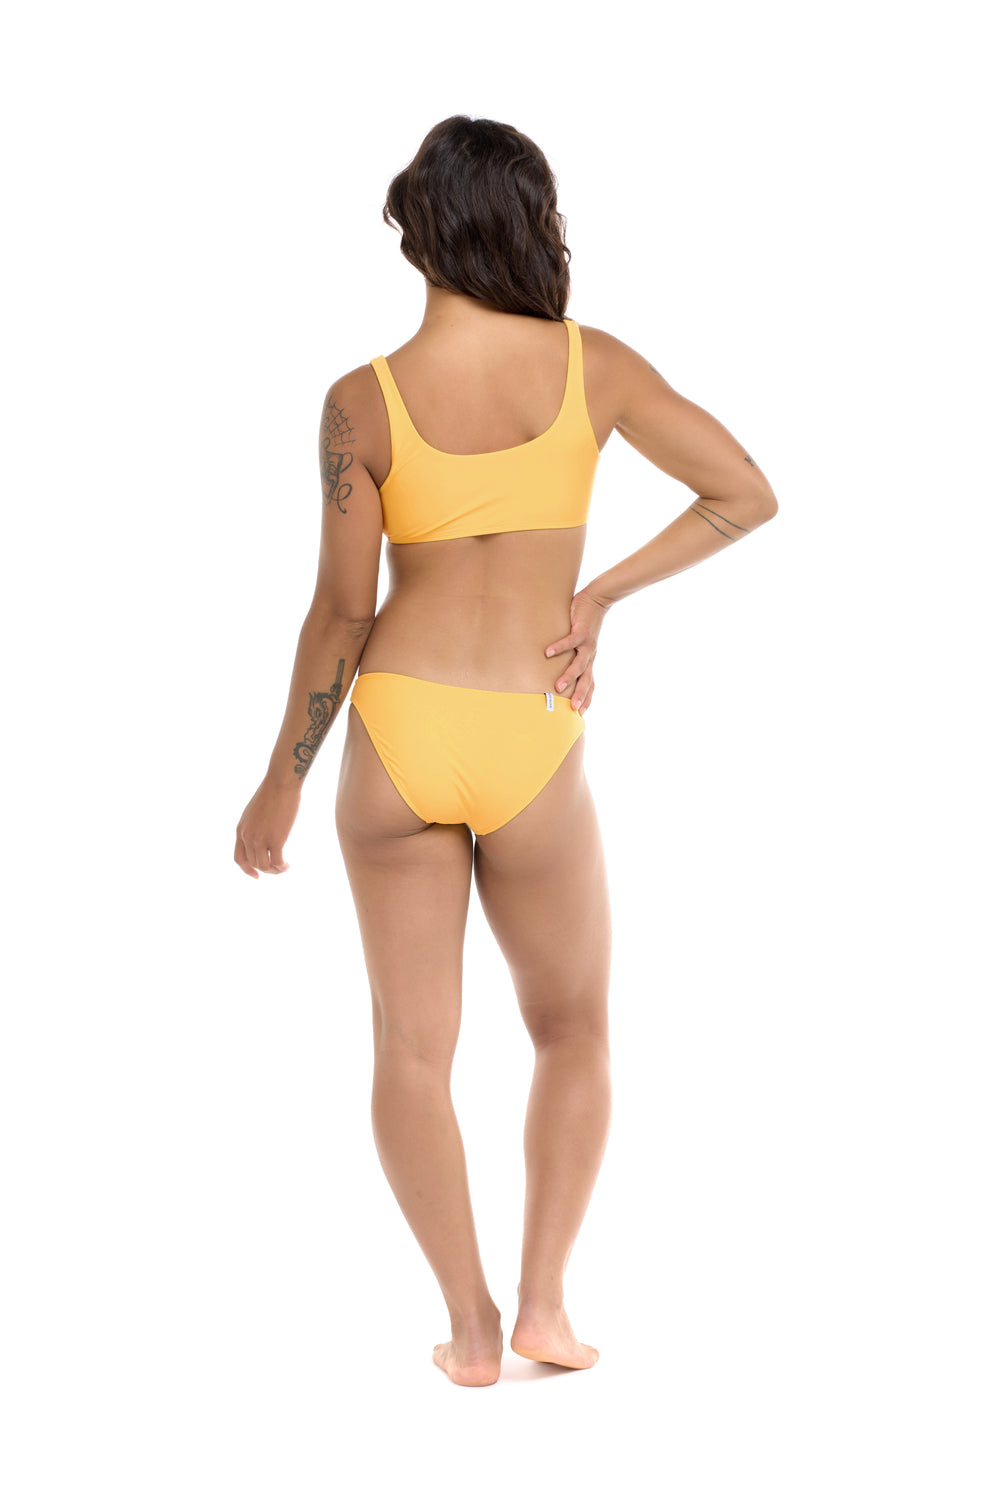 Ibiza Lolah Scoop Bikini Top - Clearwater - Body Glove